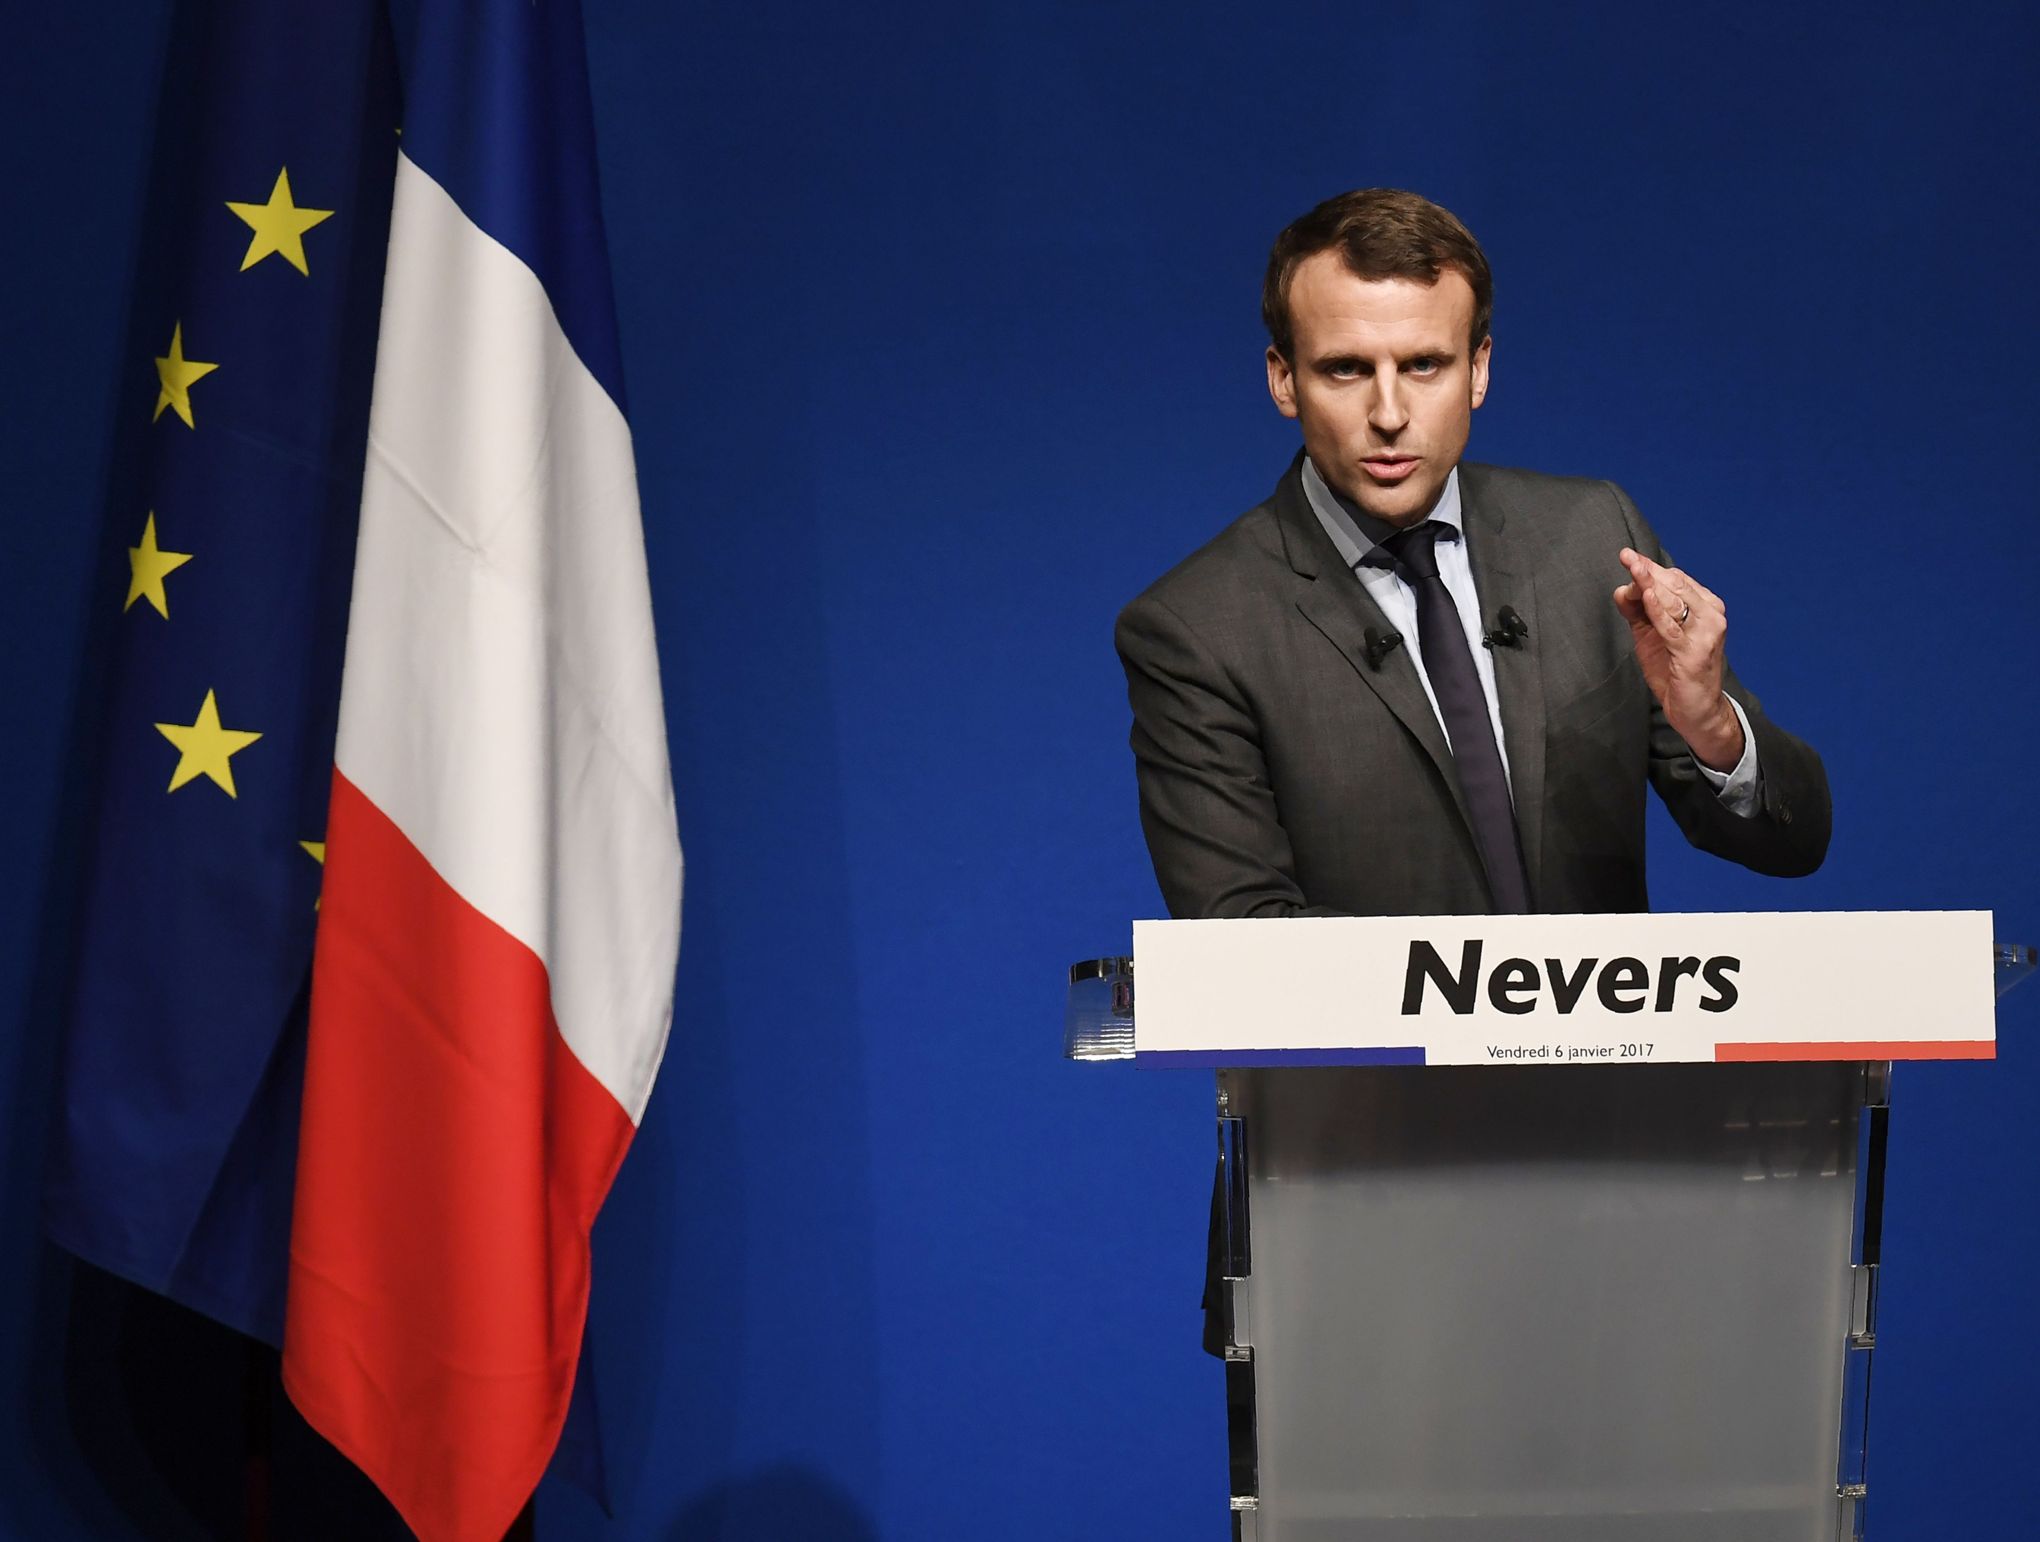 À Nevers, Macron cible Fillon sur le thème de la santé - Le Figaro